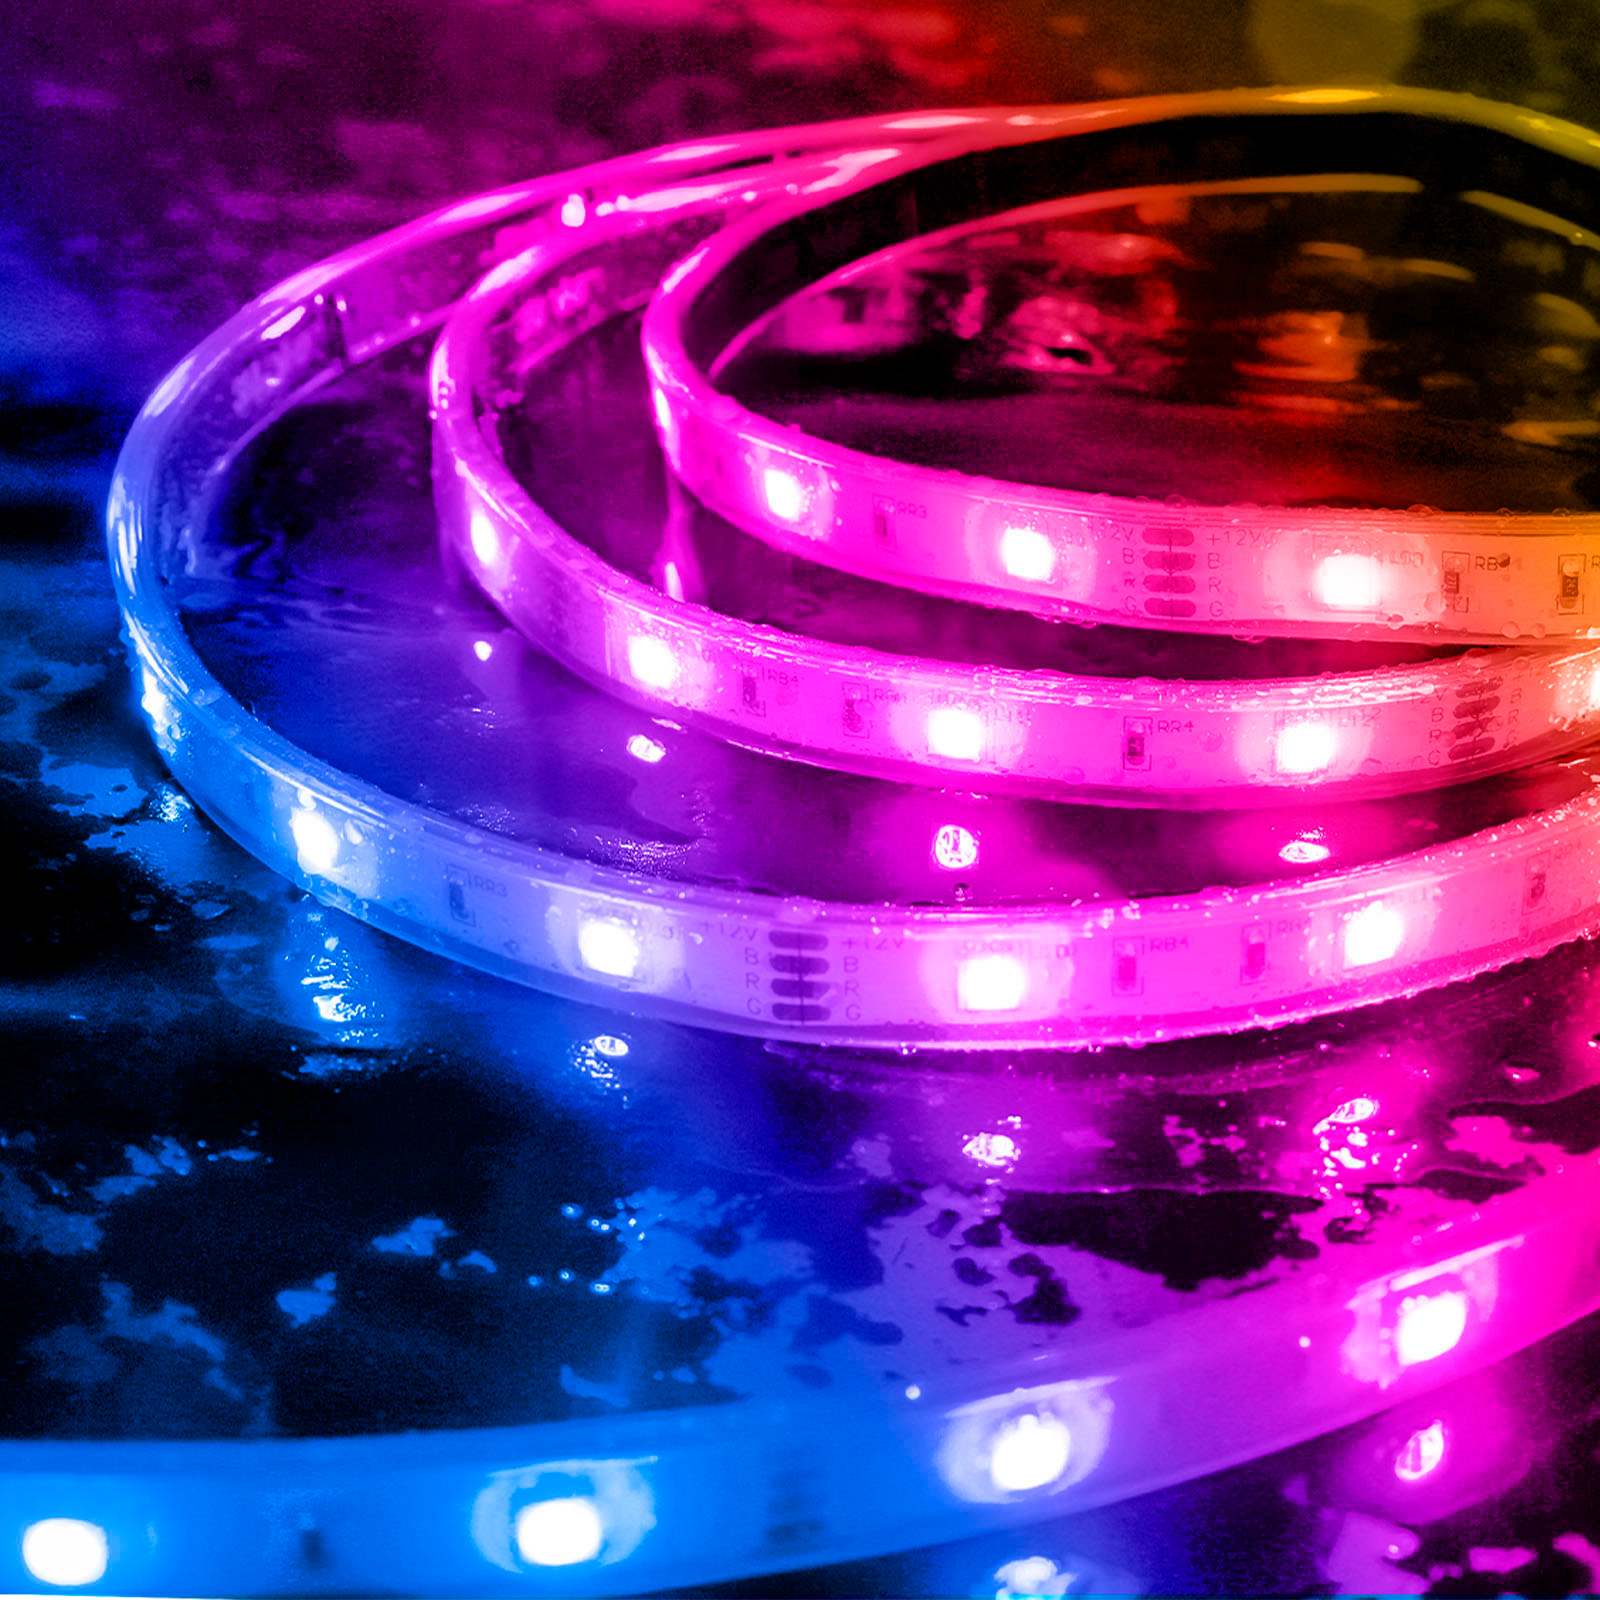 Govee H61271A2 Multicolor LED Strip Lights for sale online